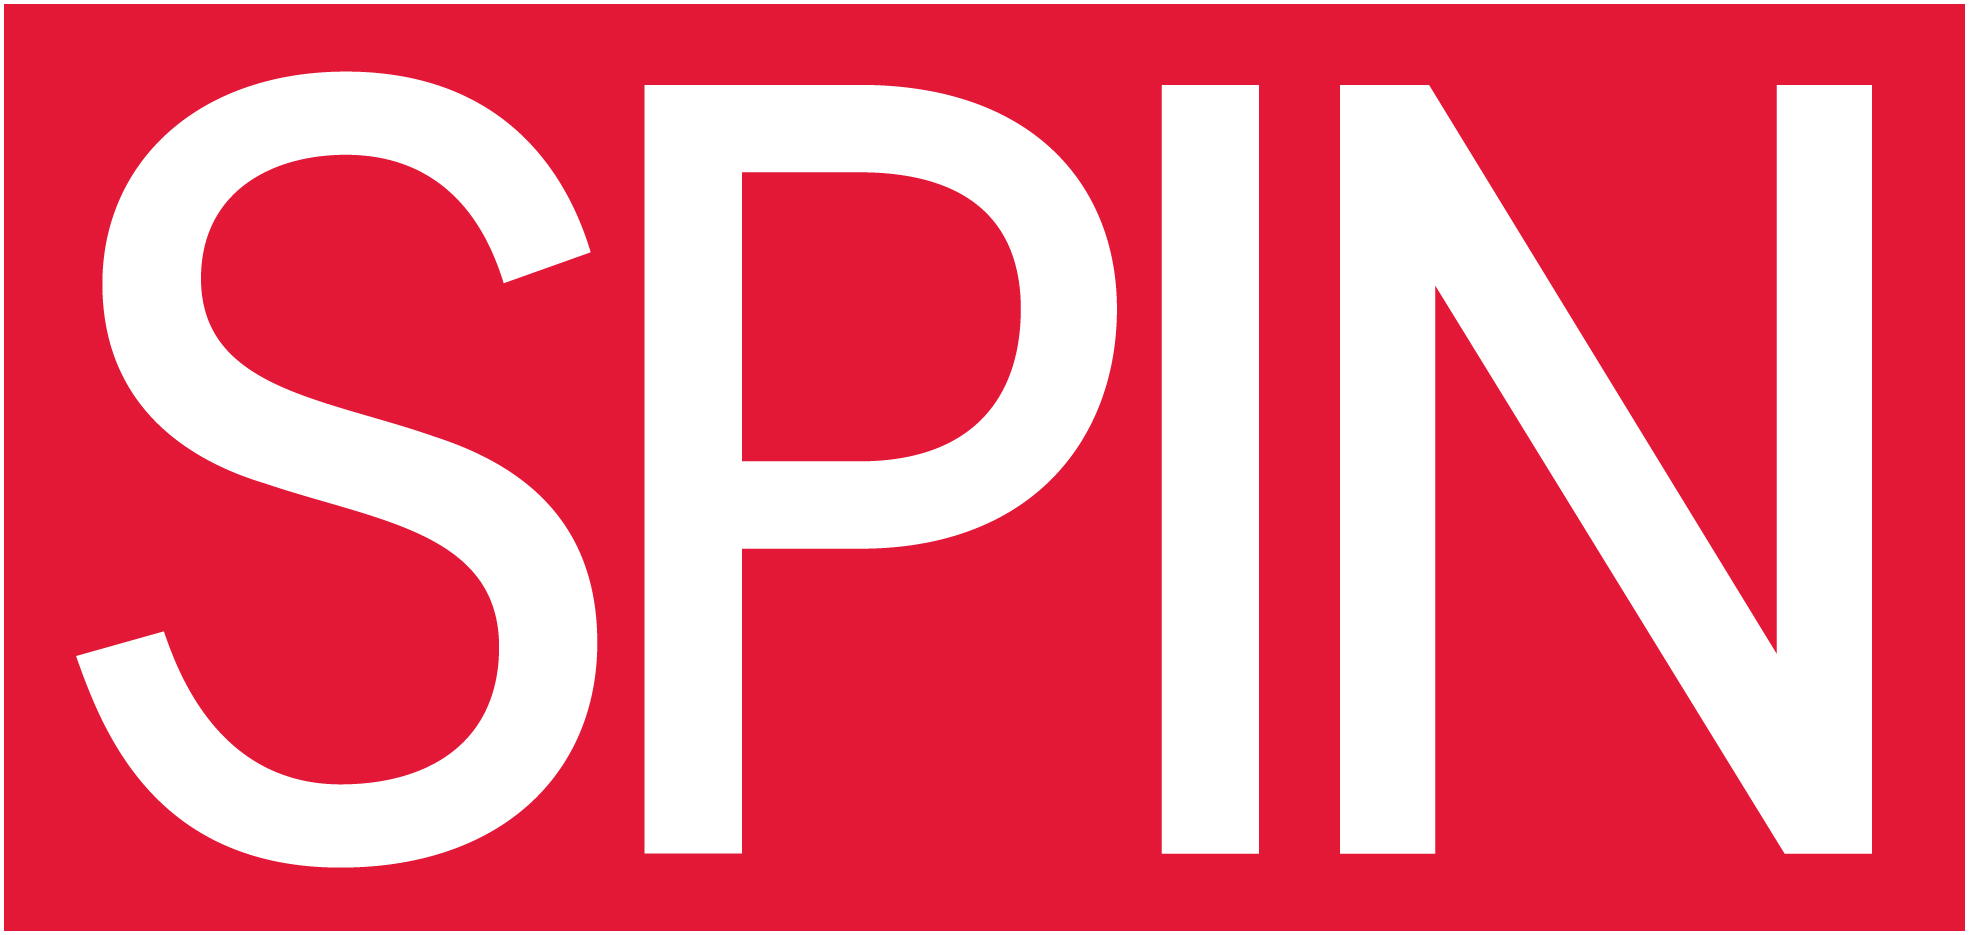 spin-logo.jpg.